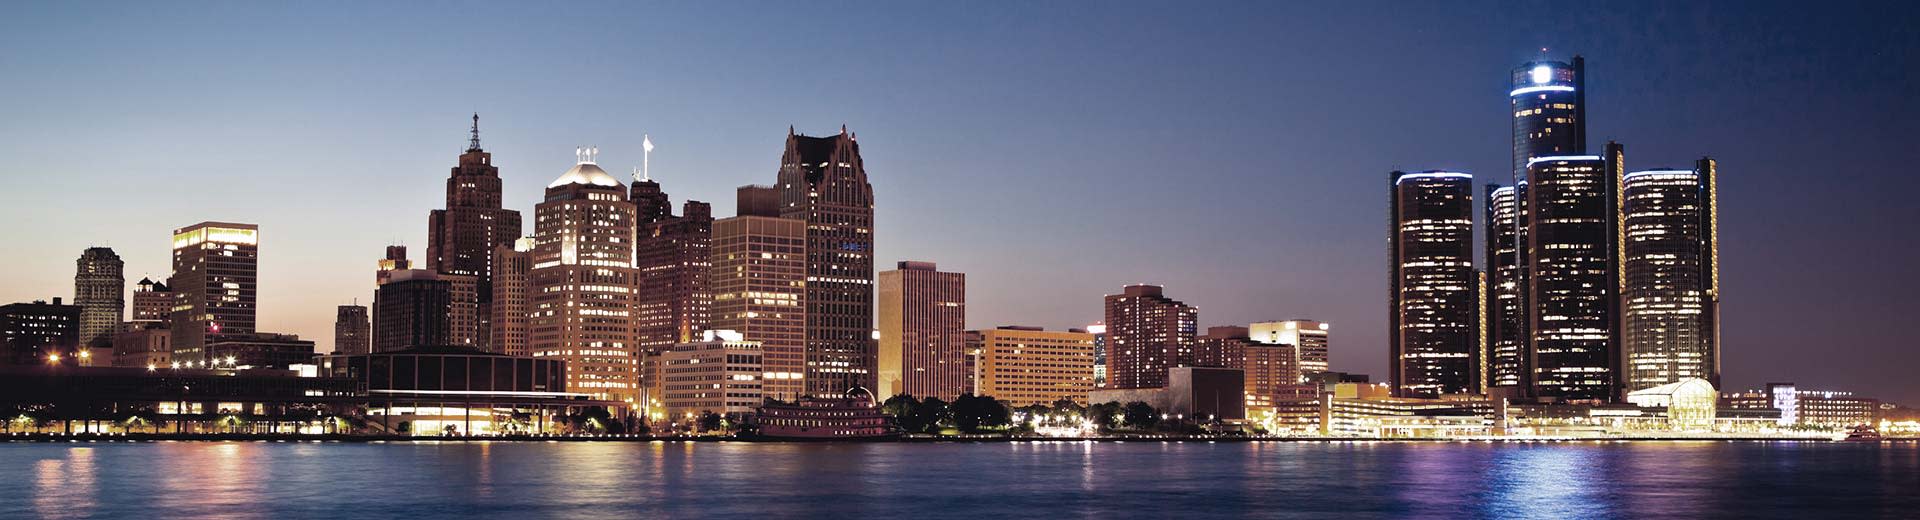 Una variedad de rascacielos iluminan el cielo nocturno sobre Detroit.